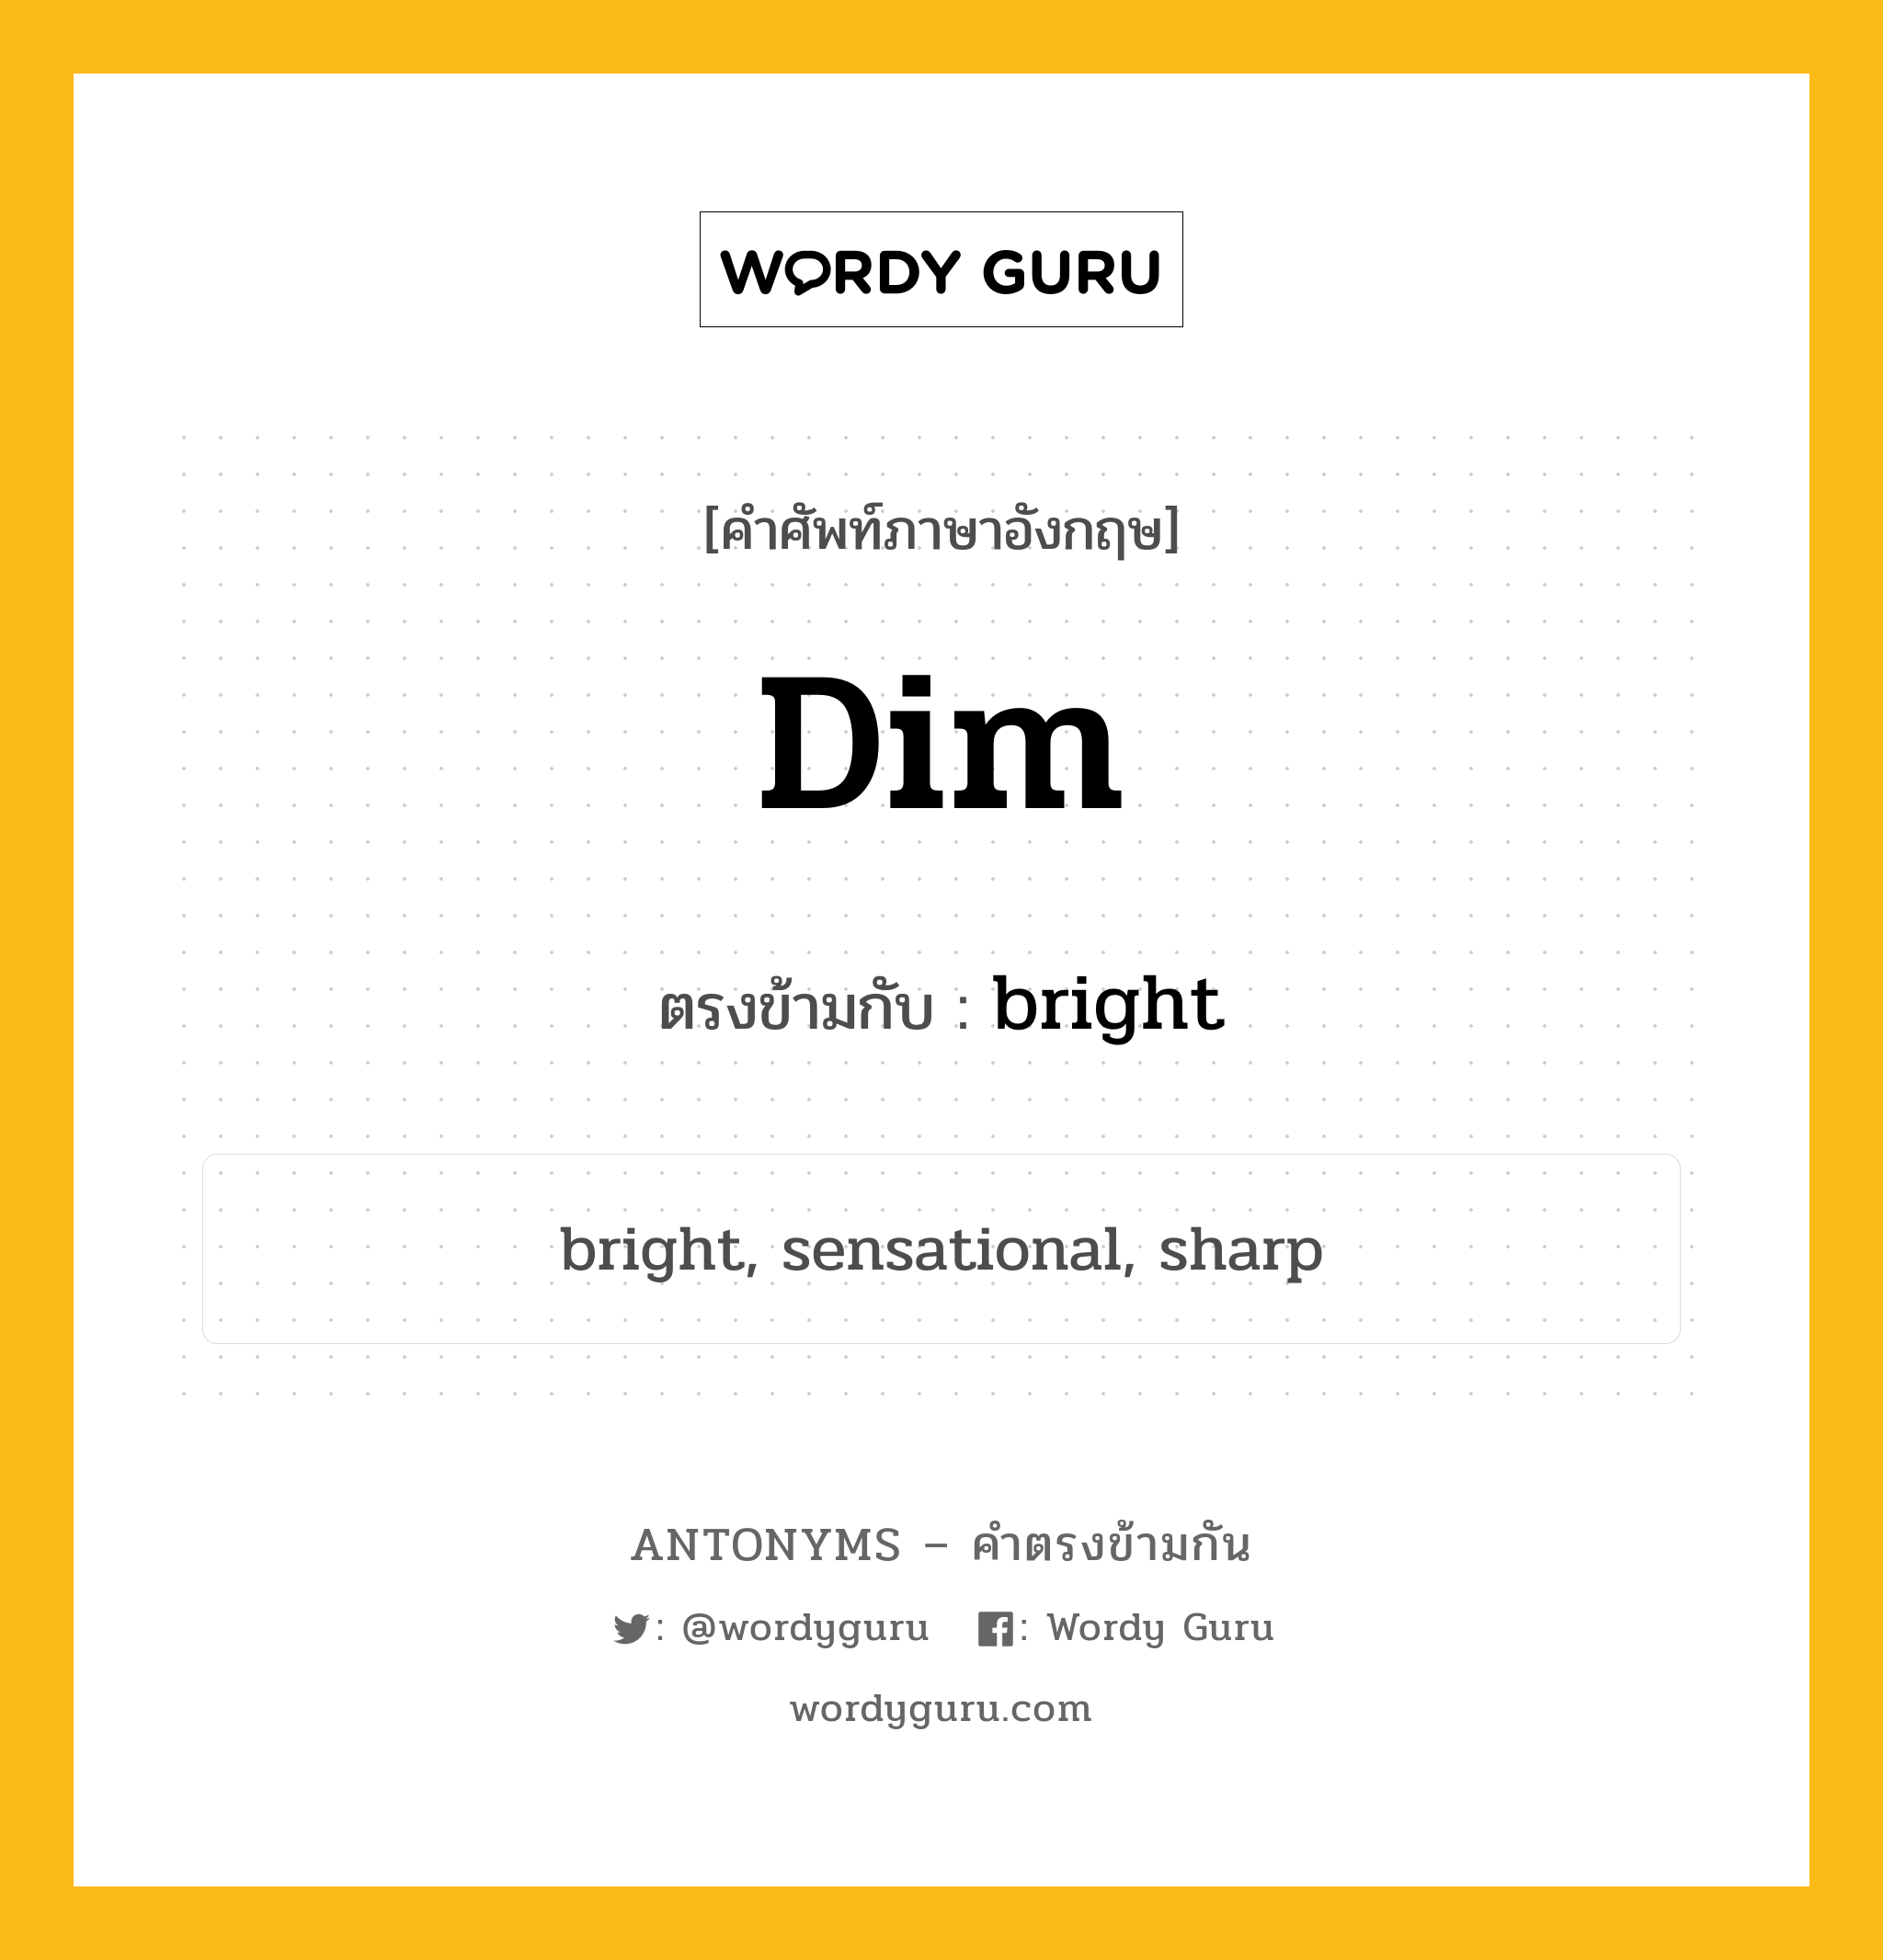 dim เป็นคำตรงข้ามกับคำไหนบ้าง?, คำศัพท์ภาษาอังกฤษ dim ตรงข้ามกับ bright หมวด bright